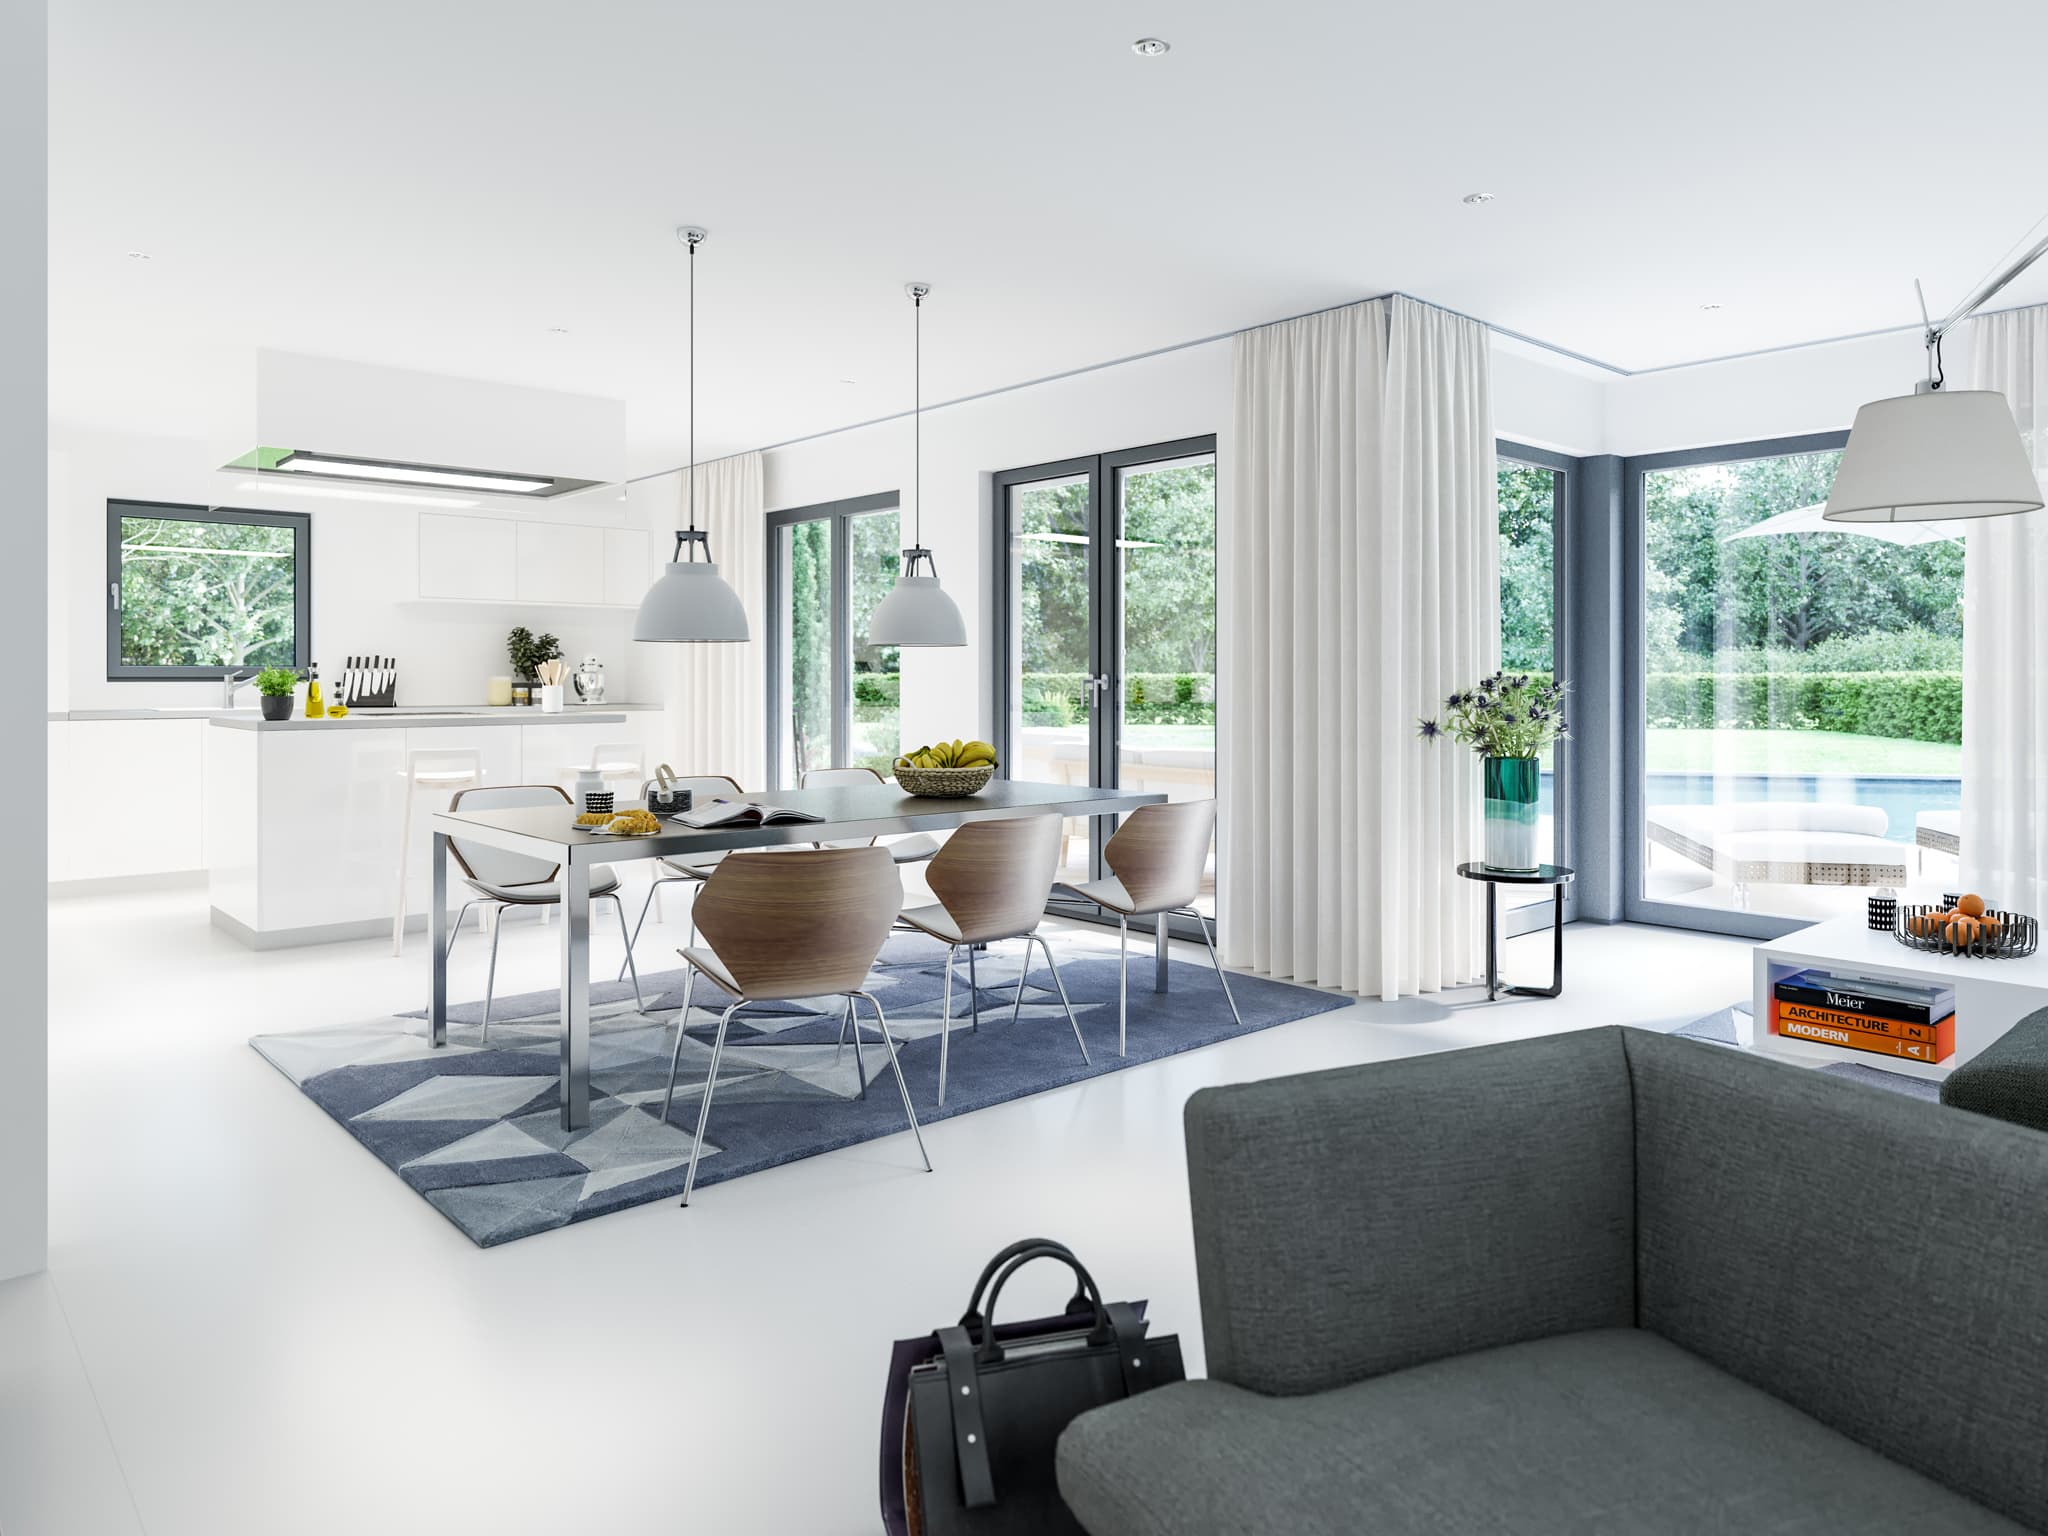 Wohn-Esszimmer offen mit Küche - Einfamilienhaus Inneneinrichtung Ideen modern Living Haus Fertighaus SUNSHINE 143 V5 - HausbauDirekt.de